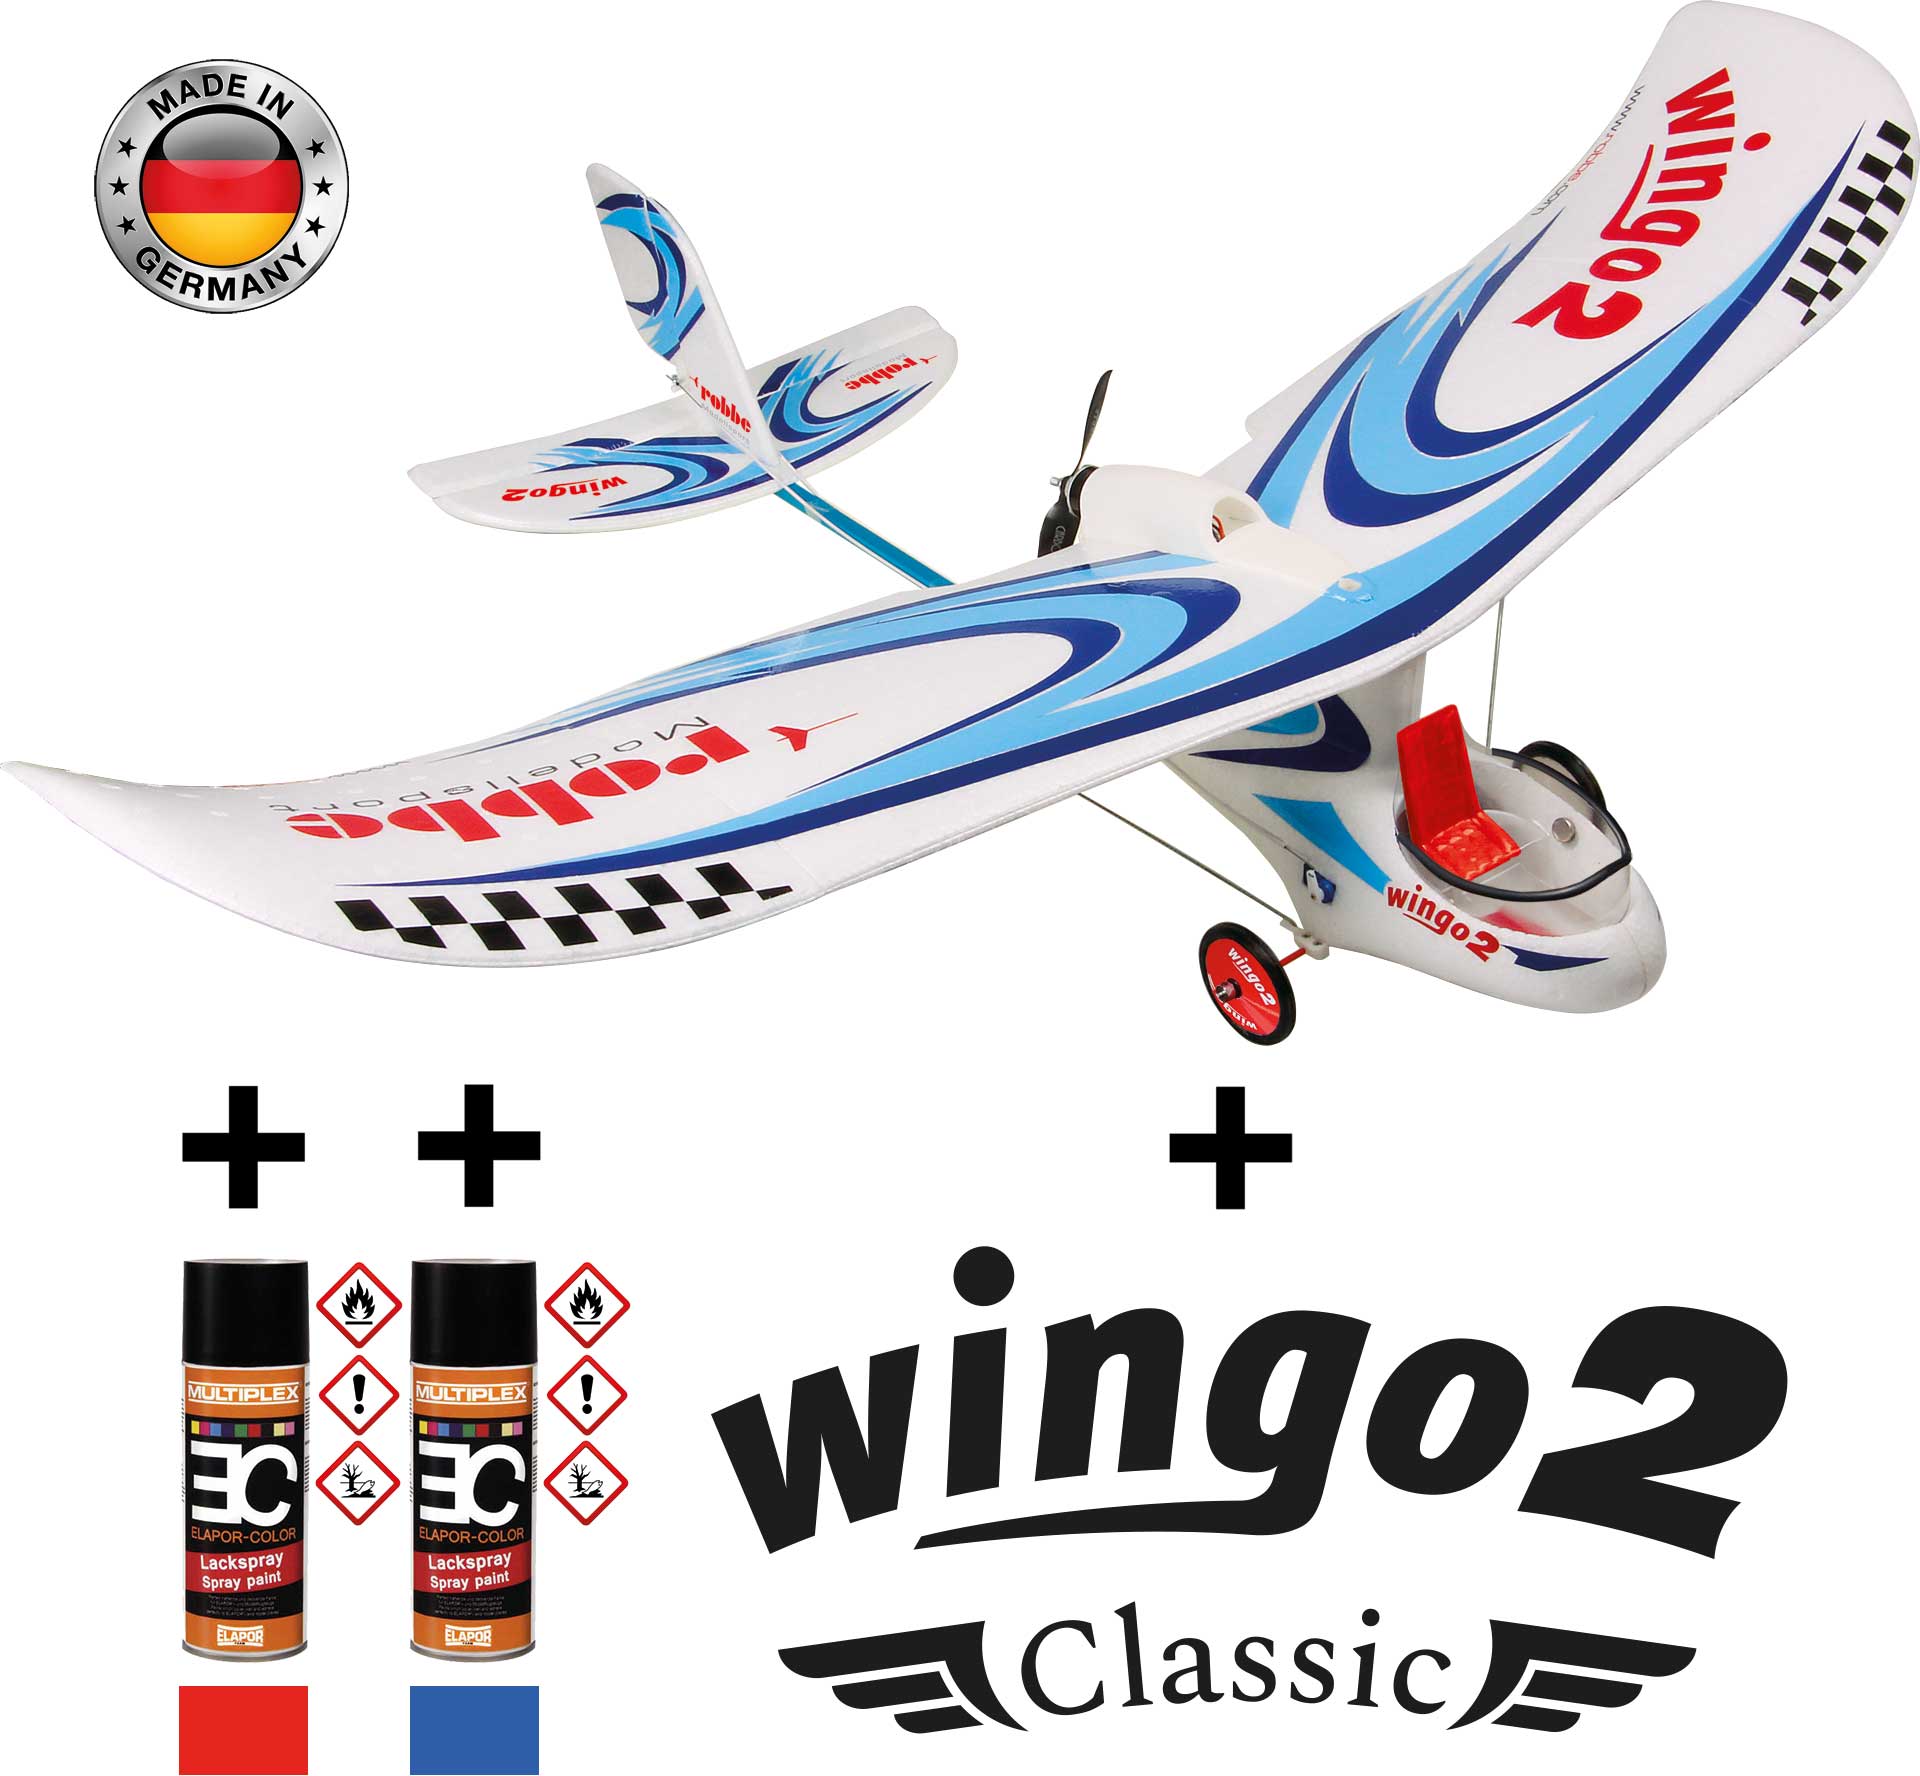 Robbe Modellsport Wingo 2 Kit "Classic" version spéciale avec kit de décoration "Classic" et spray de couleur rouge/bleu